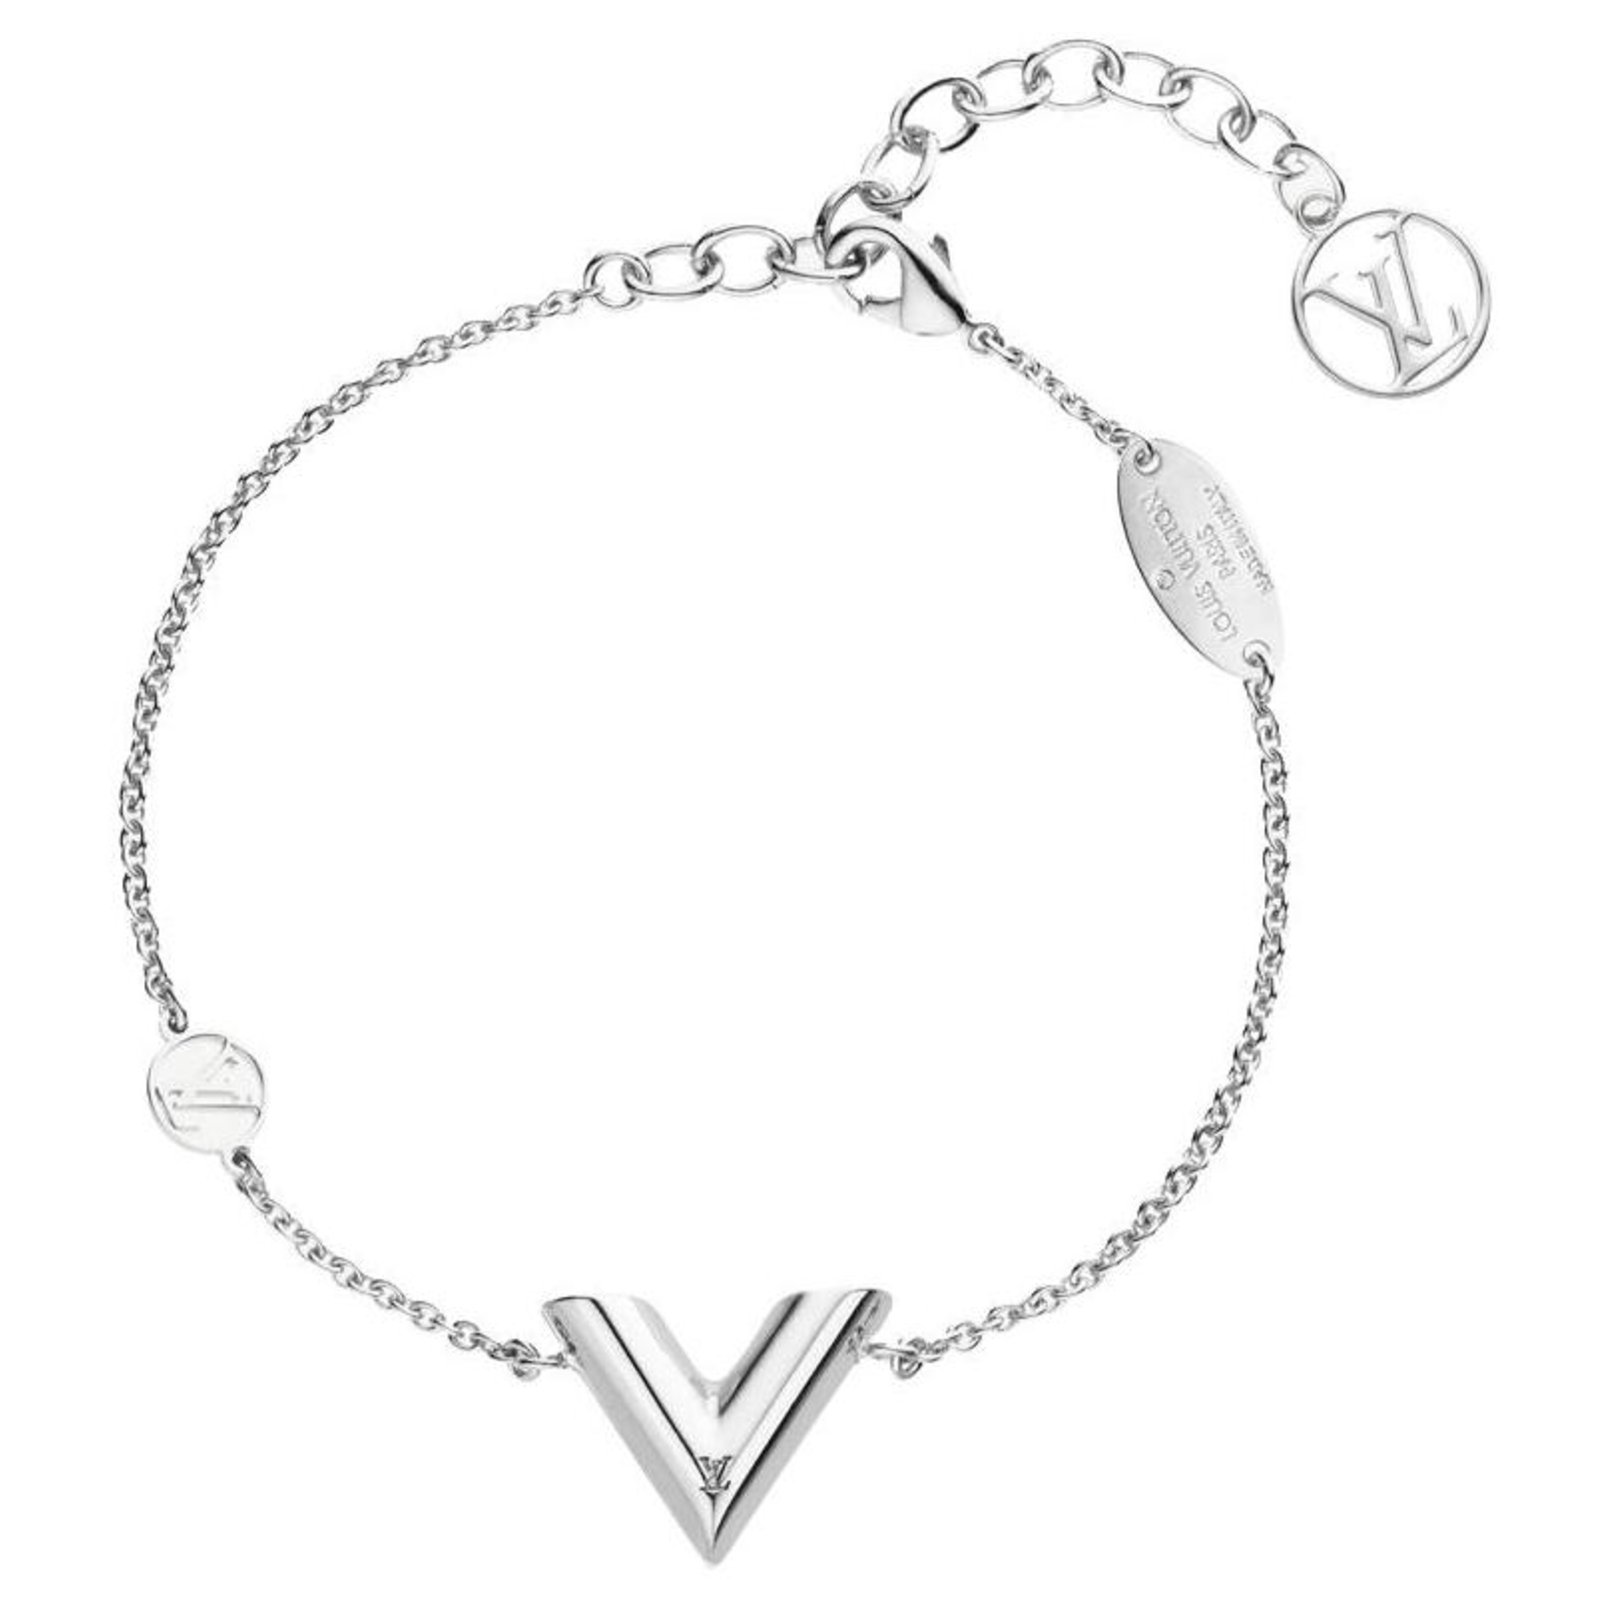 Louis Vuitton Armbänder aus Metall - Silber - 36249753